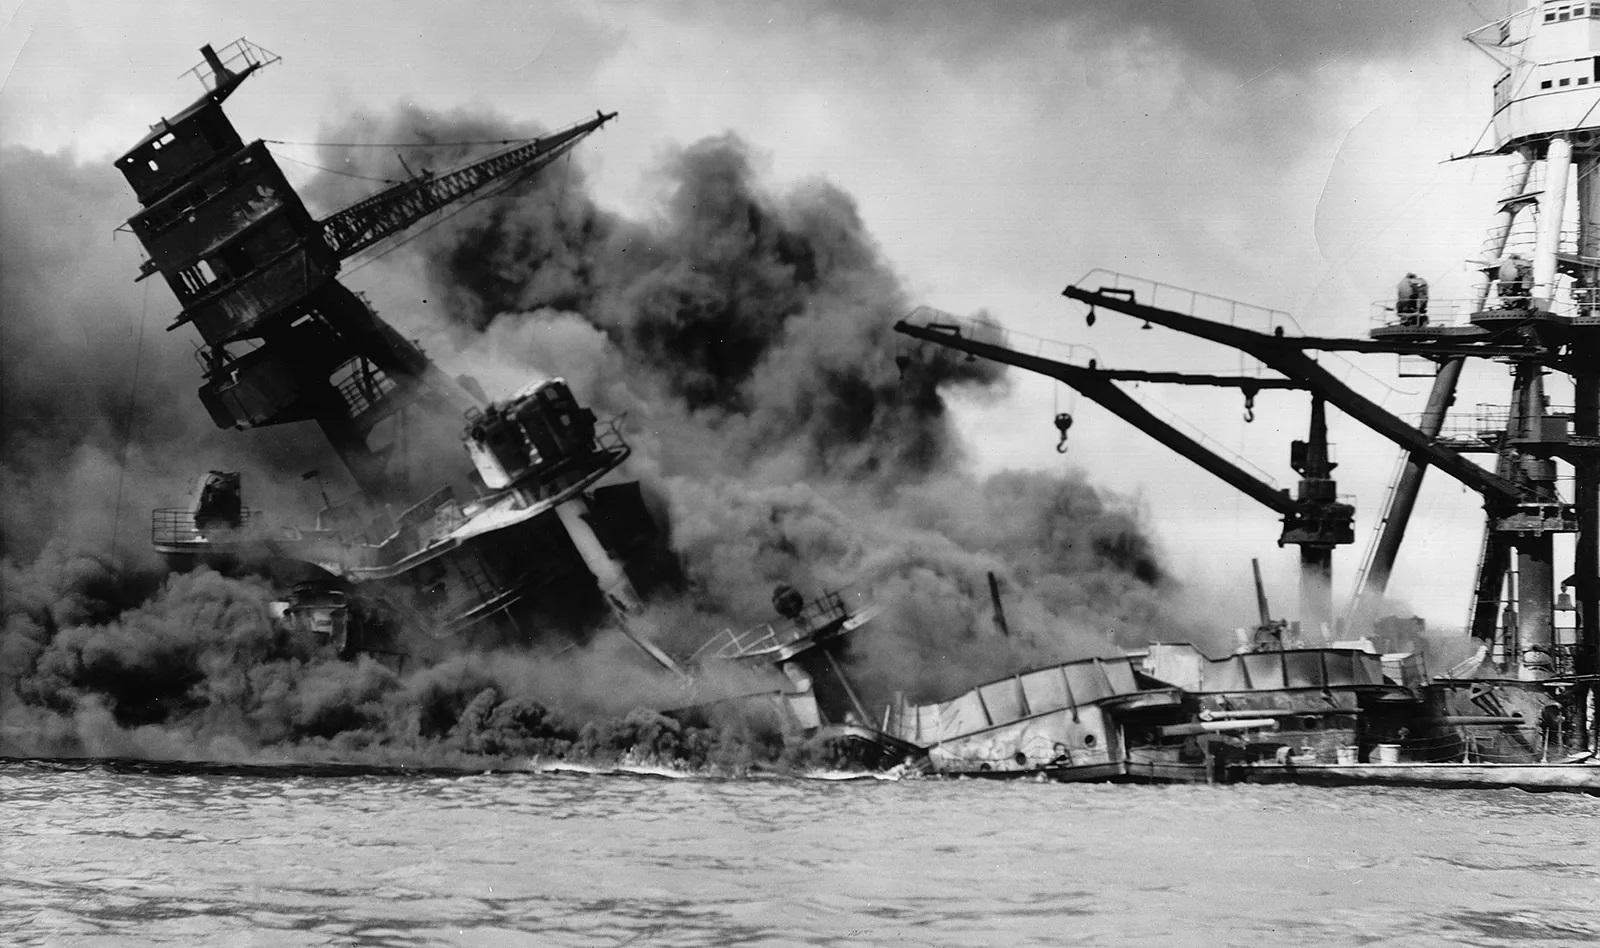 battleship-attack-Pearl-Harbor-Japanese-Hawaii-December-7-1941.jpg